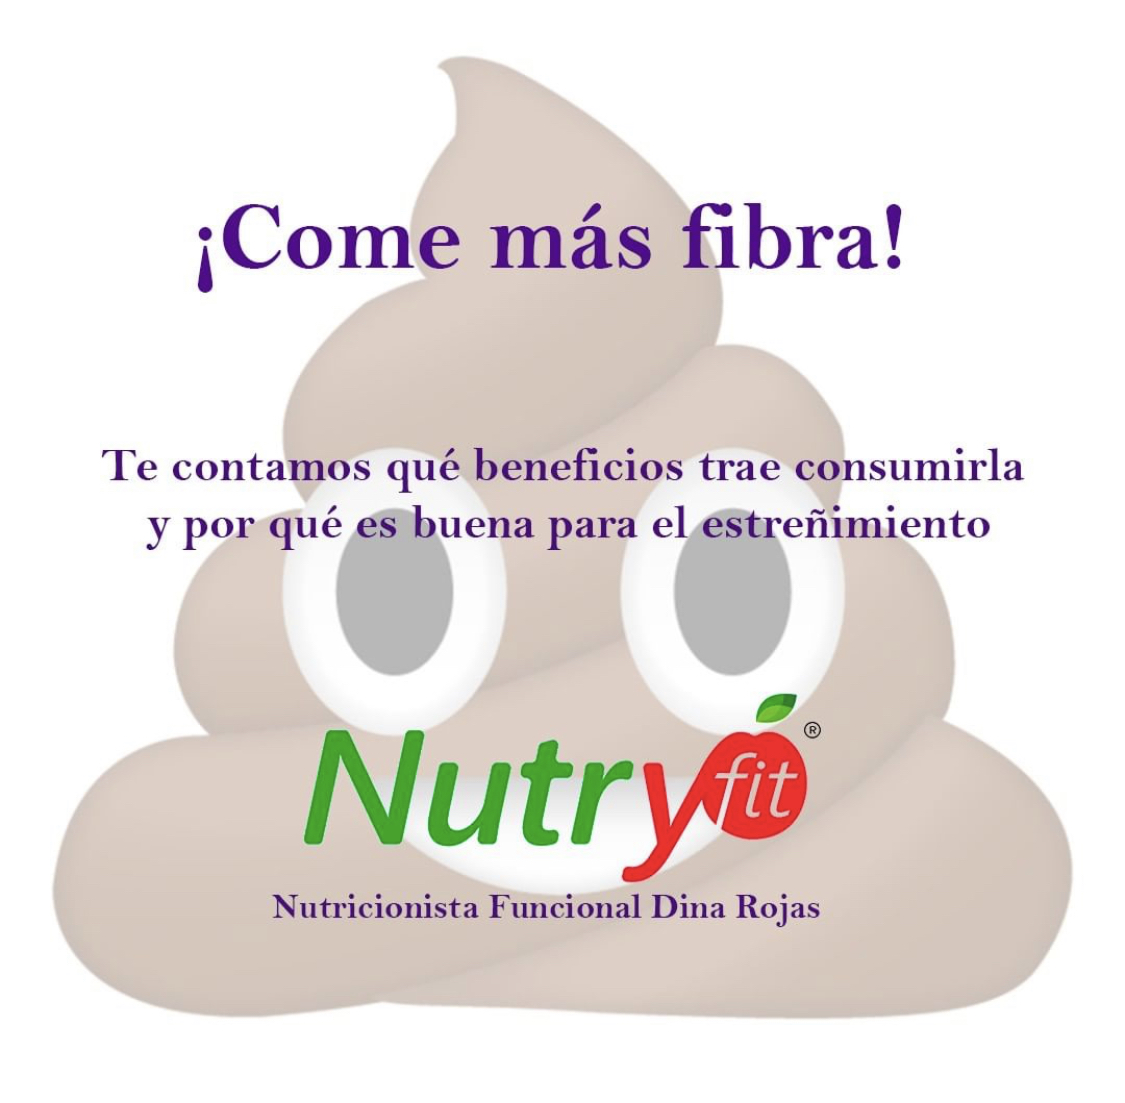 Nutricionista Diana Rojas, Ntryfit, Nutricionista Bogotá, mejor nutricionista, nutricionista, nutricionista funcional.